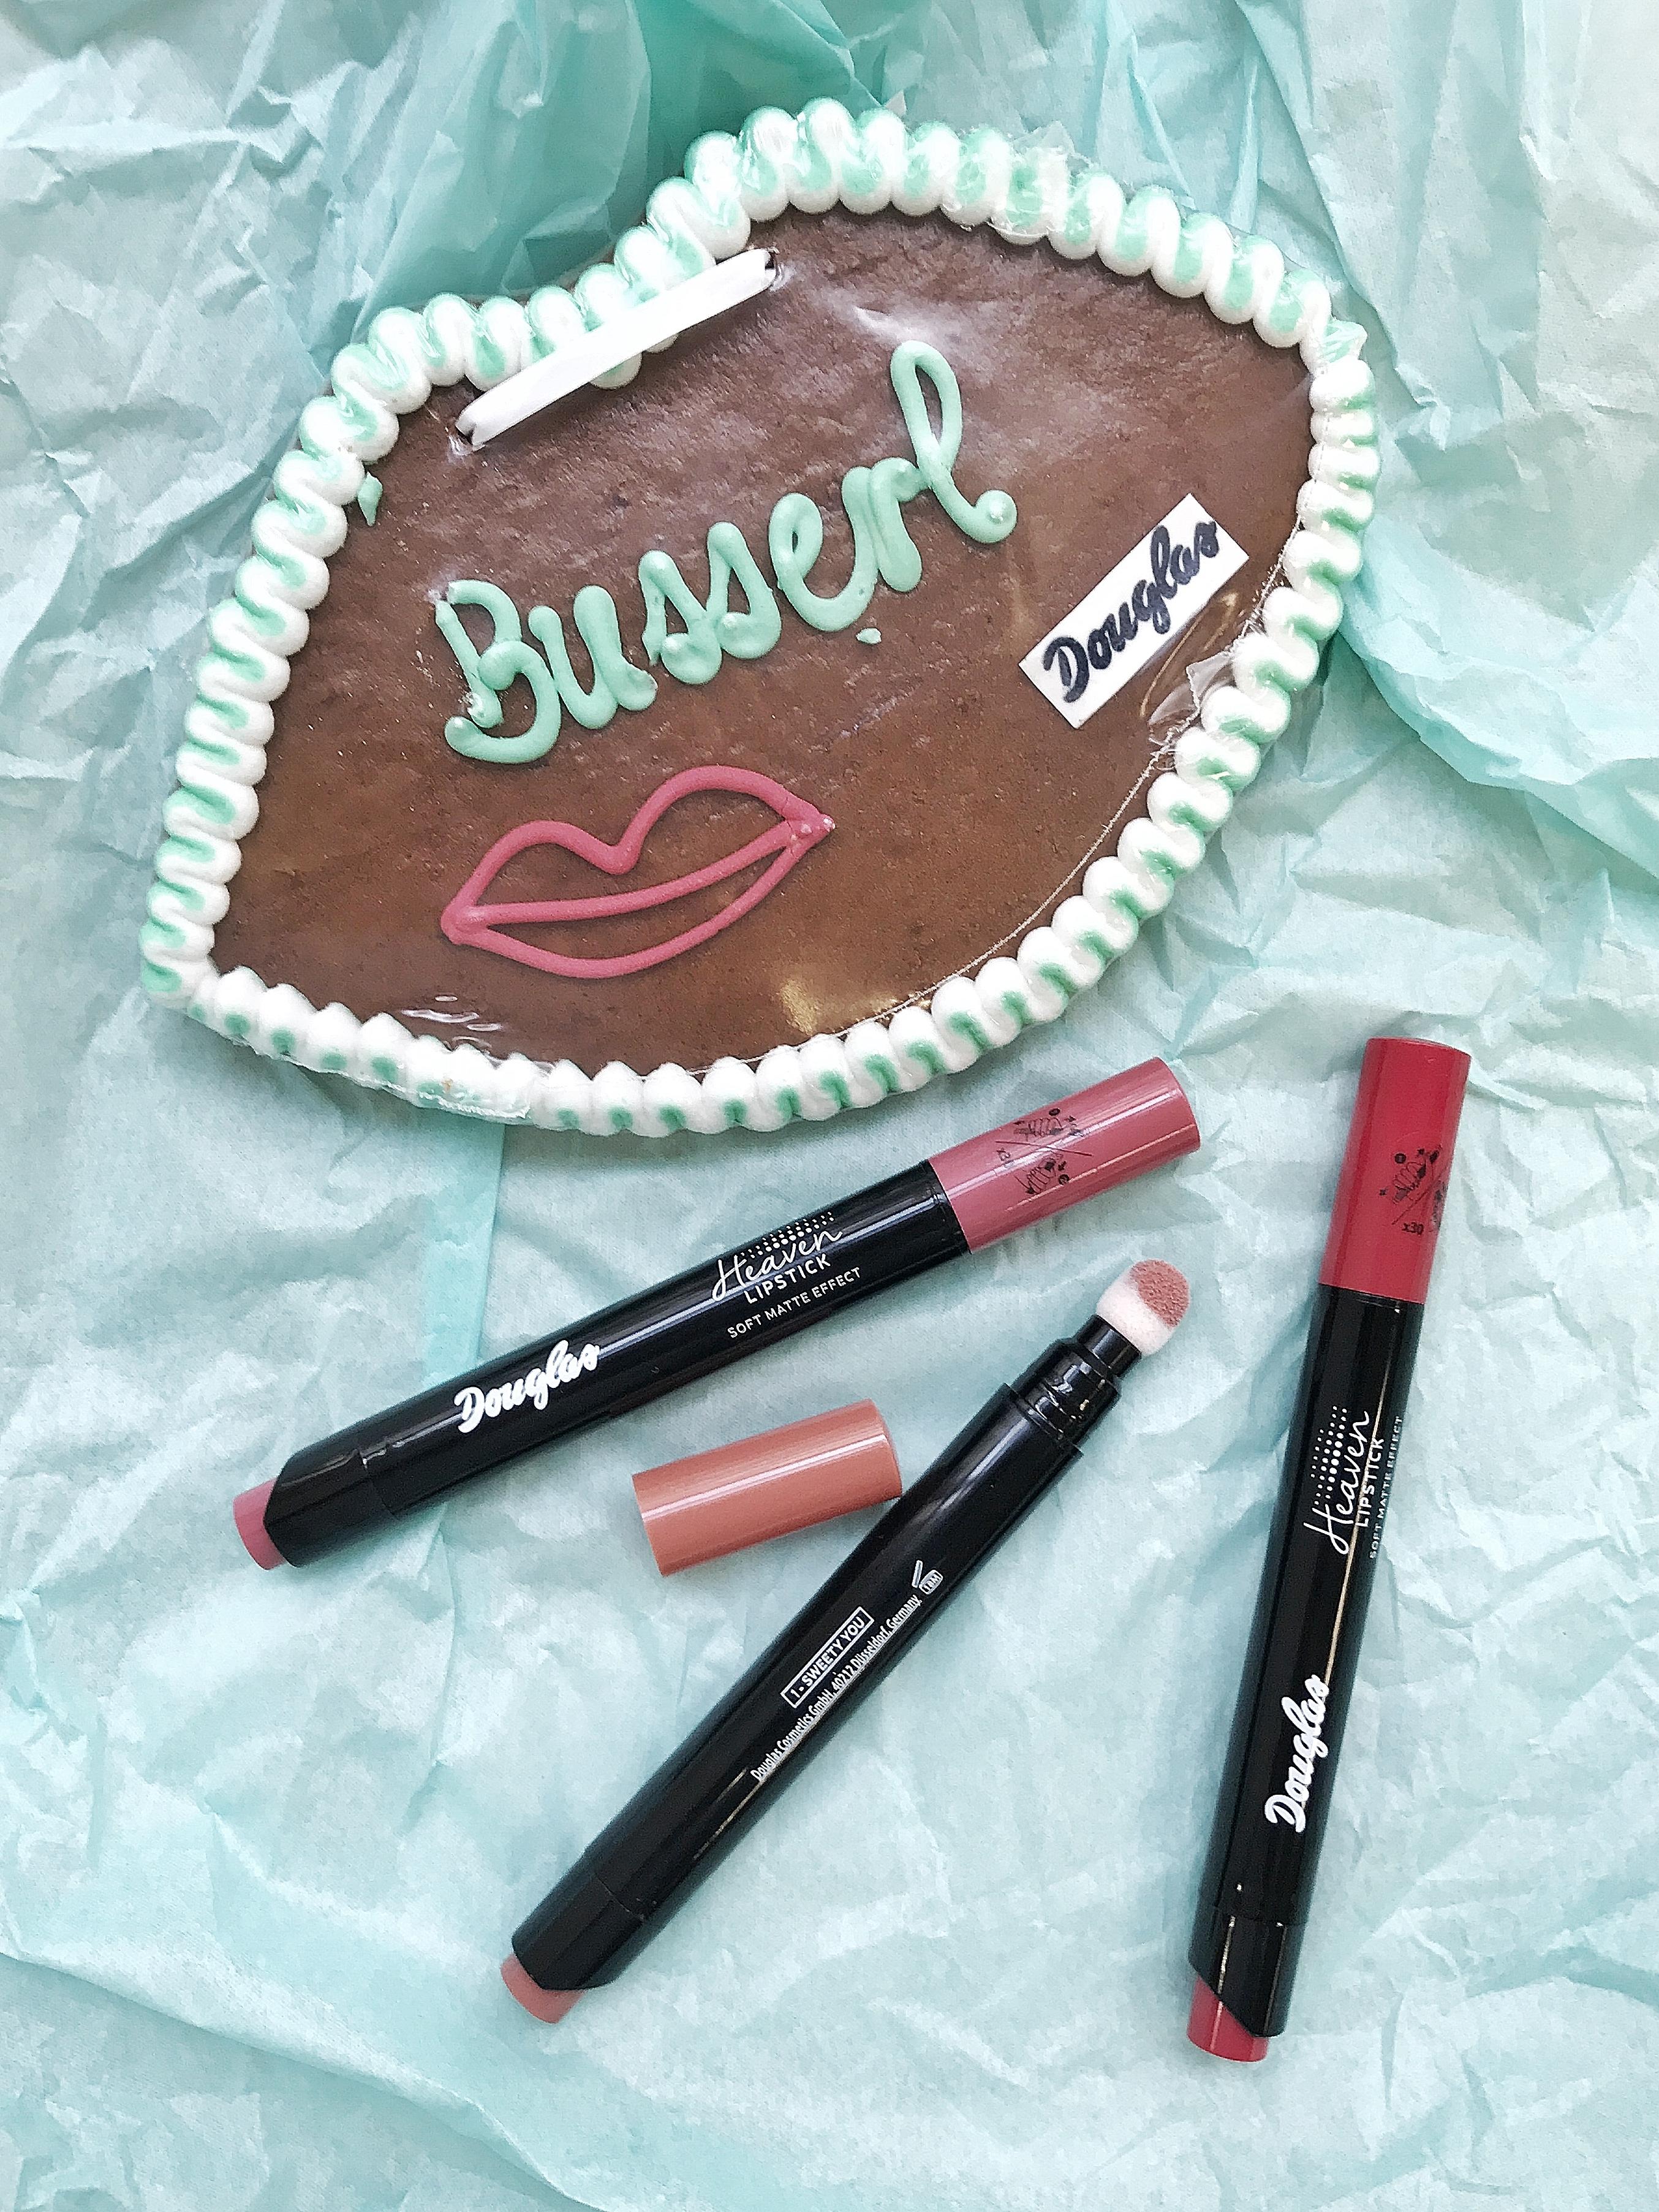 Nachschub für die Lippenstift-Sammlung 💋 
#couchliebt #makeup #lippenstift #oktoberfestdeko #douglas